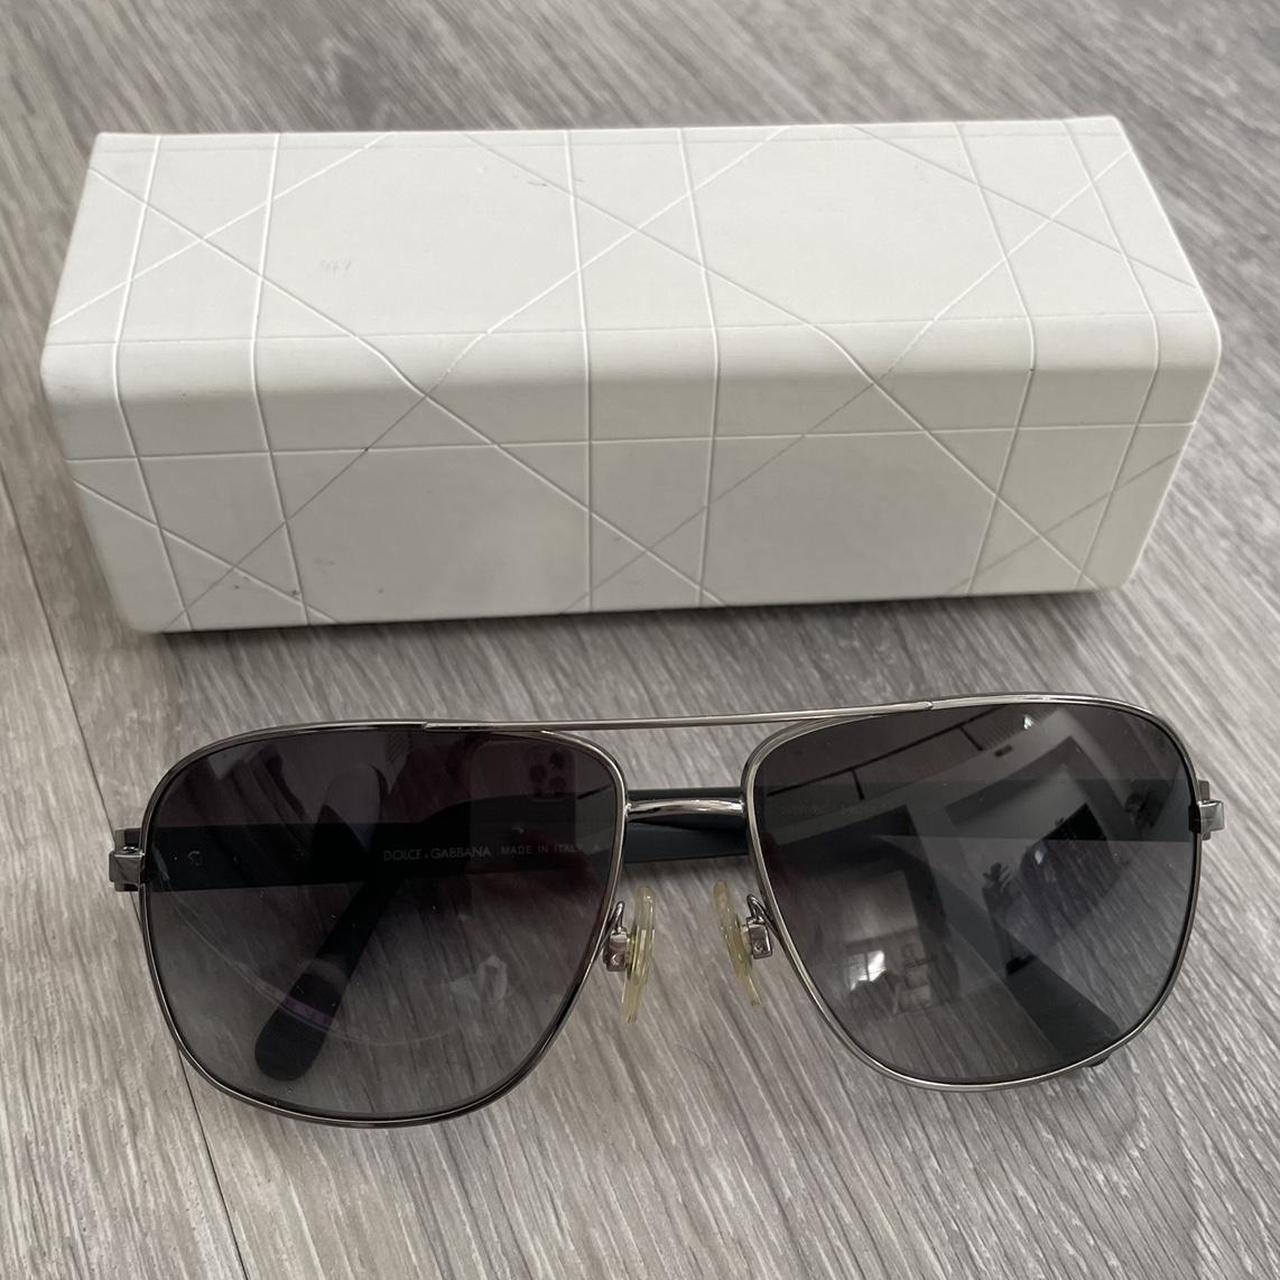 Dolce & Gabbana Men's Black and Silver Sunglasses